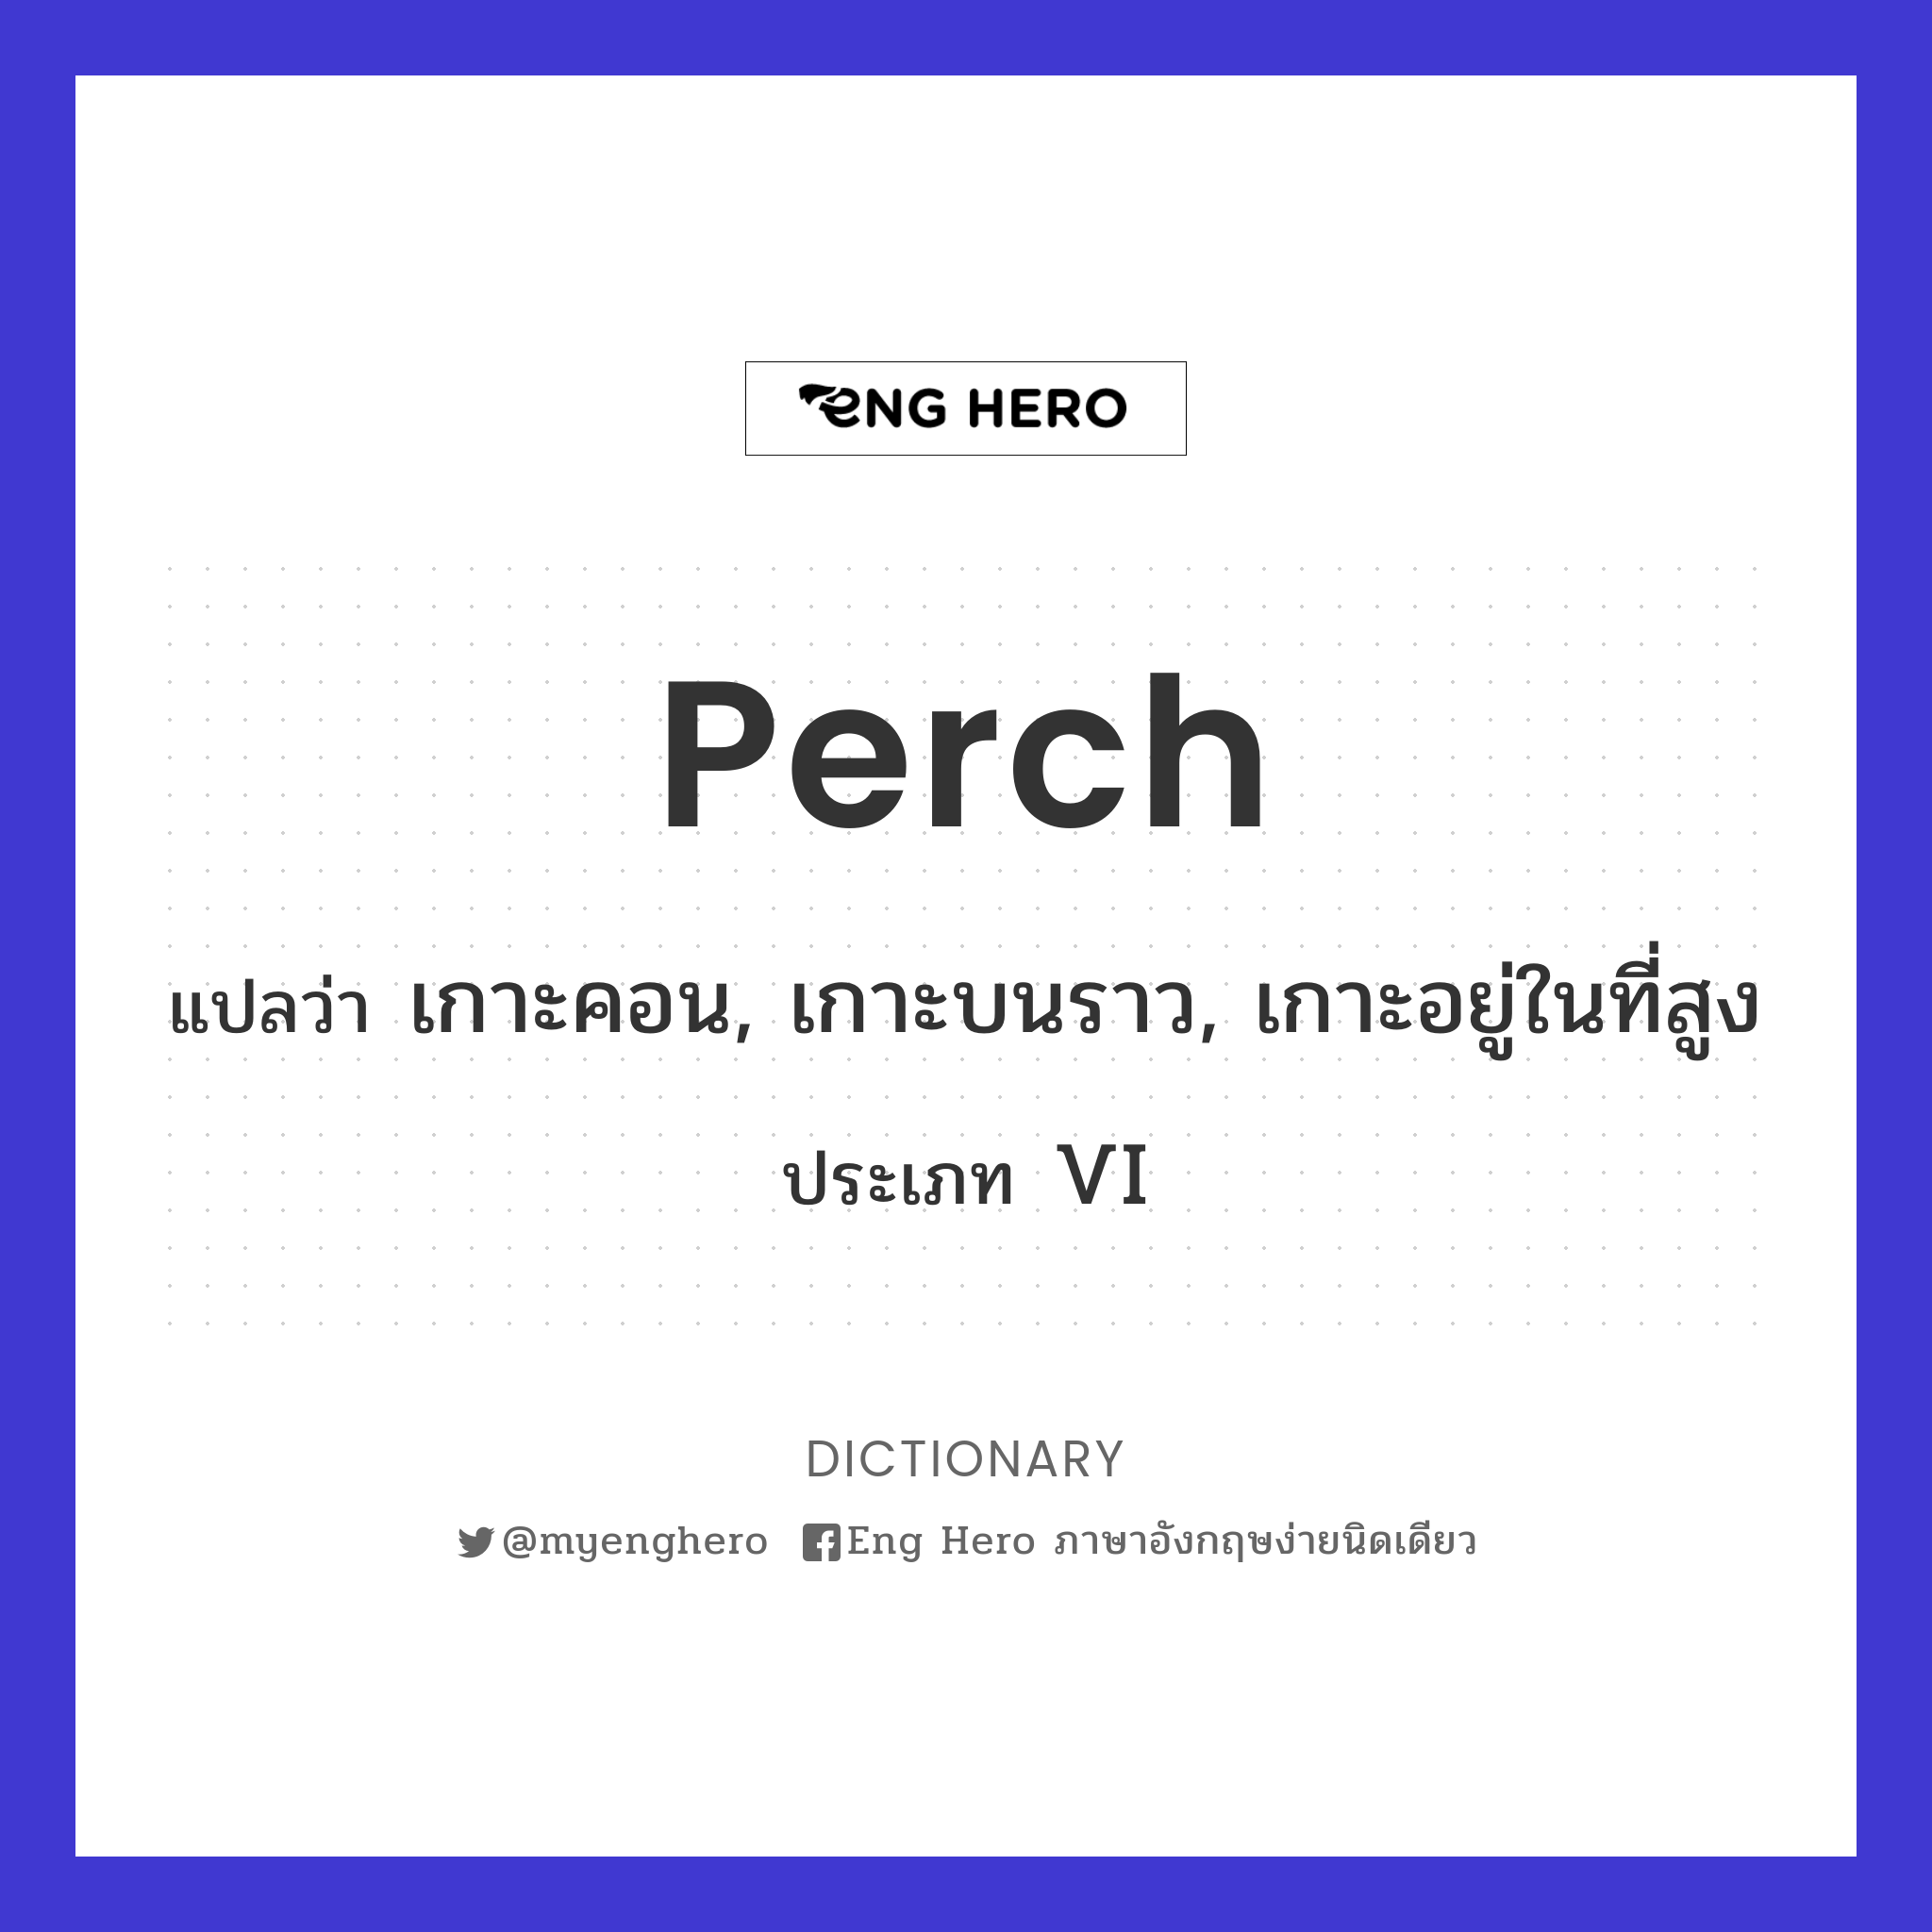 perch